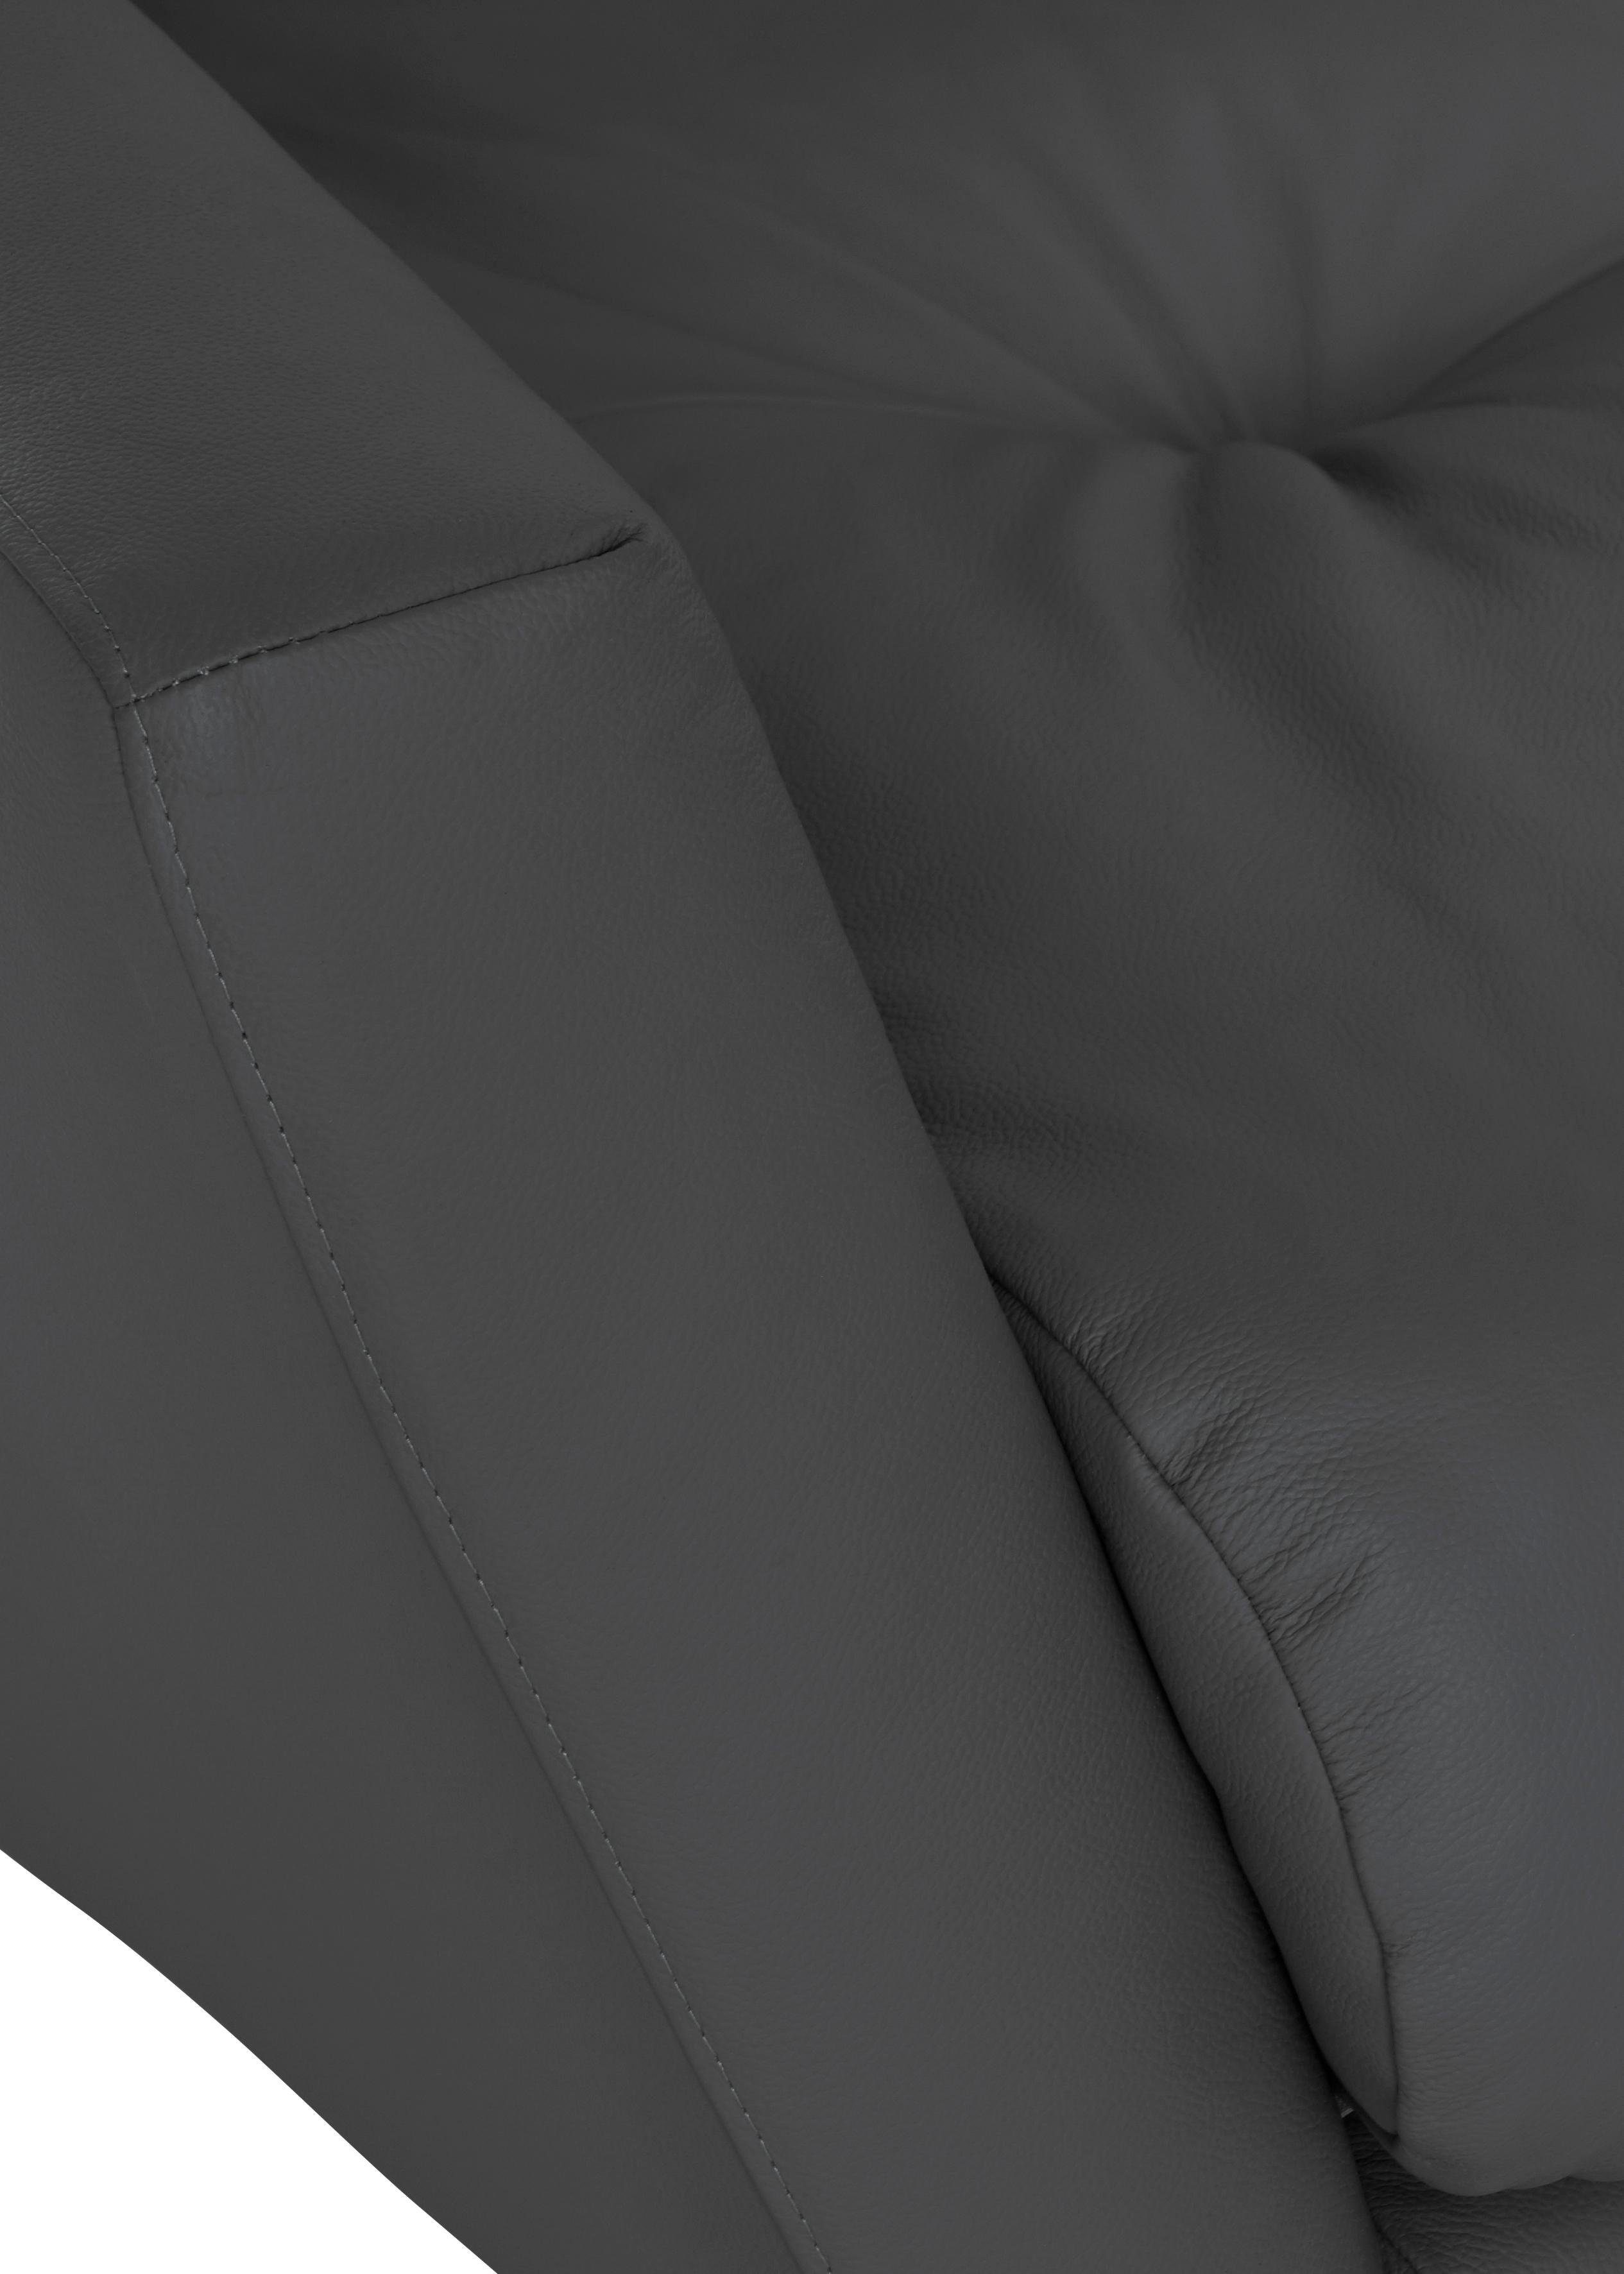 Füße Big-Sofa softy, Heftung W.SCHILLIG mit dekorativer im schwarz pulverbeschichtet Sitz,